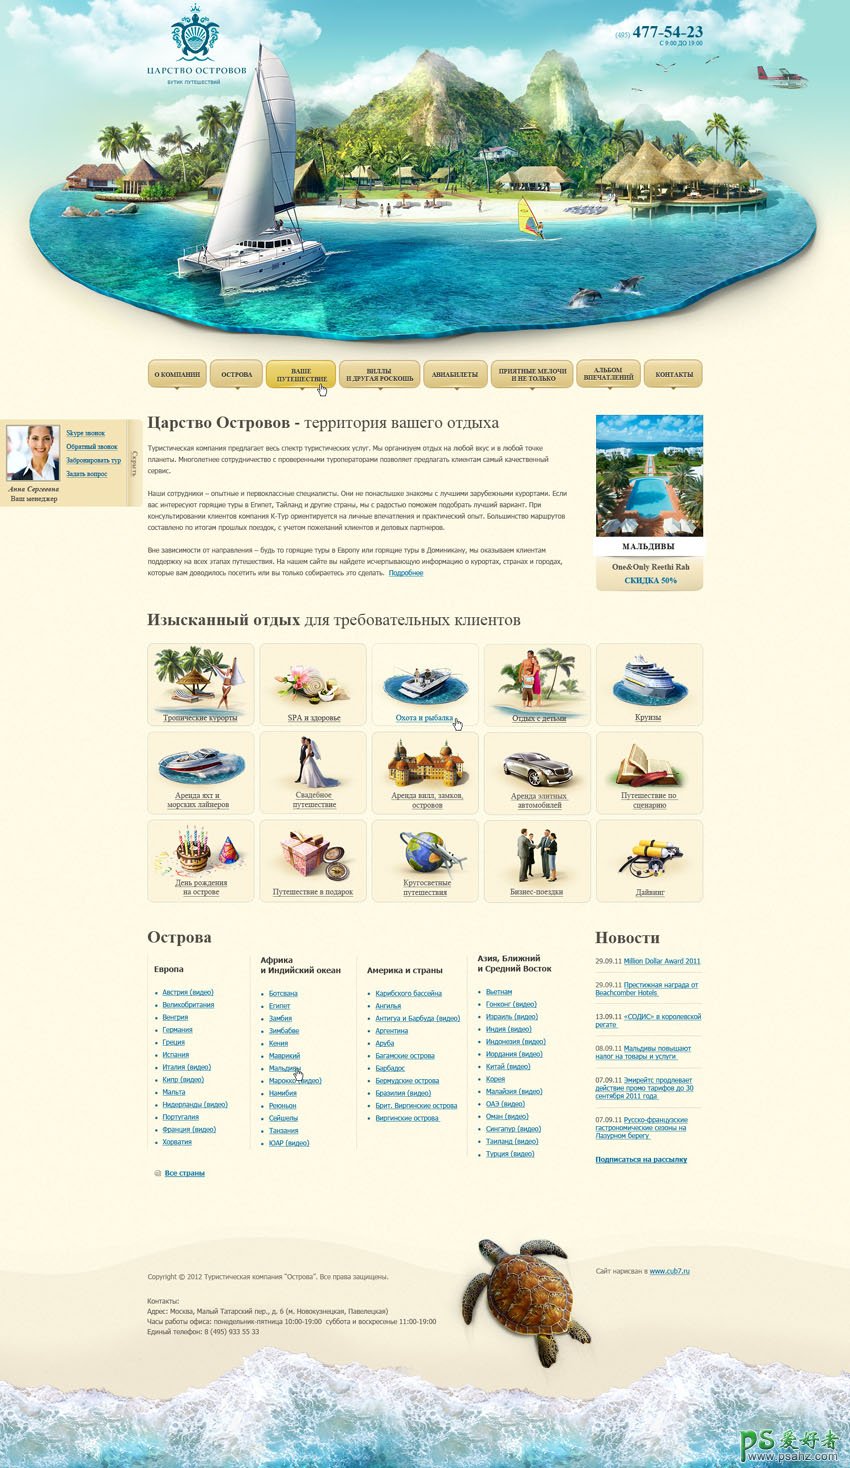 超强立体感的网页设计作品，立体感极强的风景区网页广告设计